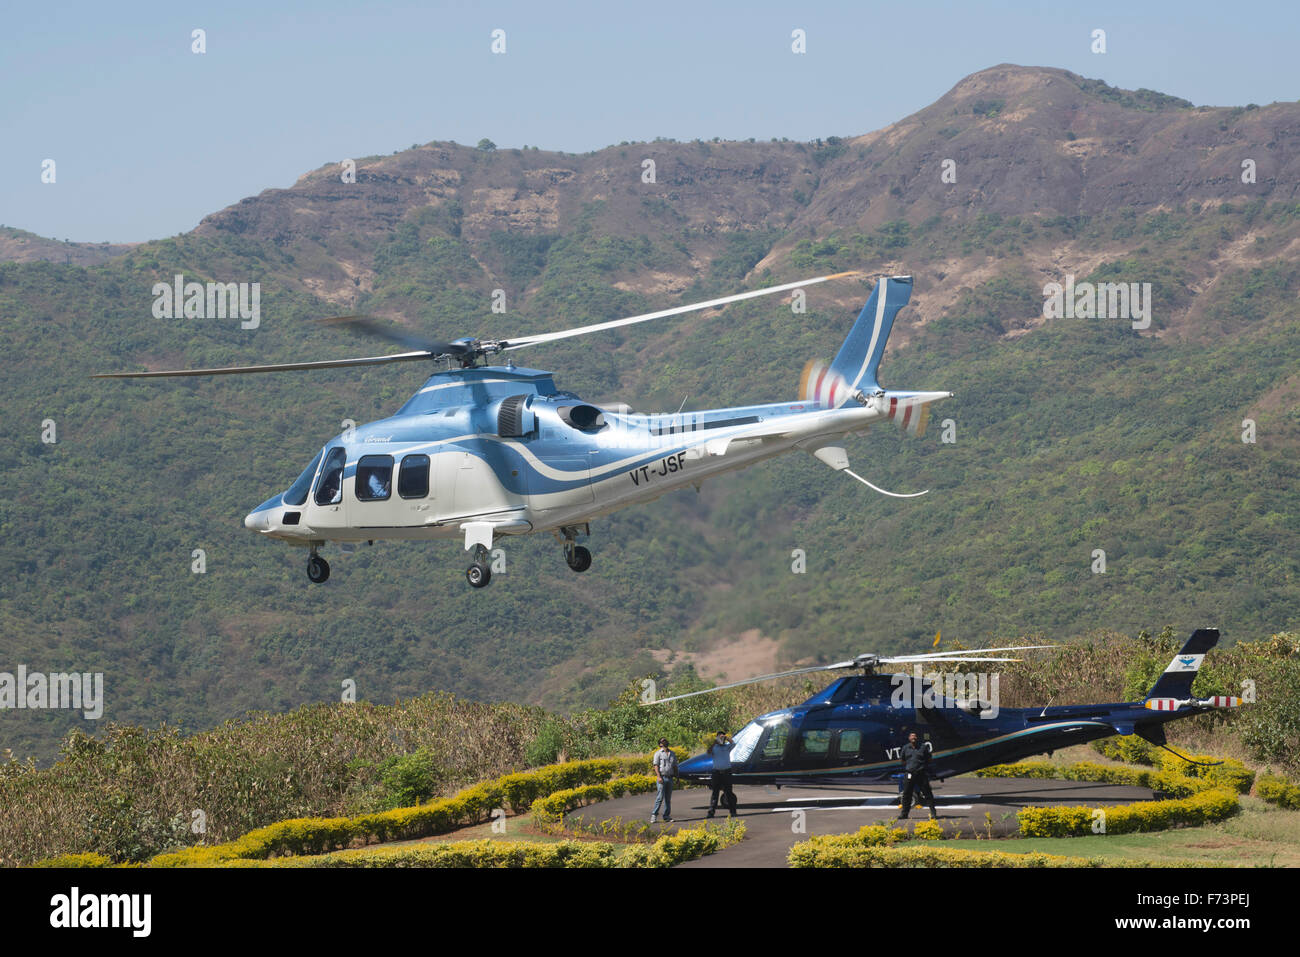 Helicopter, lavasa, pune, maharashtra, india, asia Stock Photo